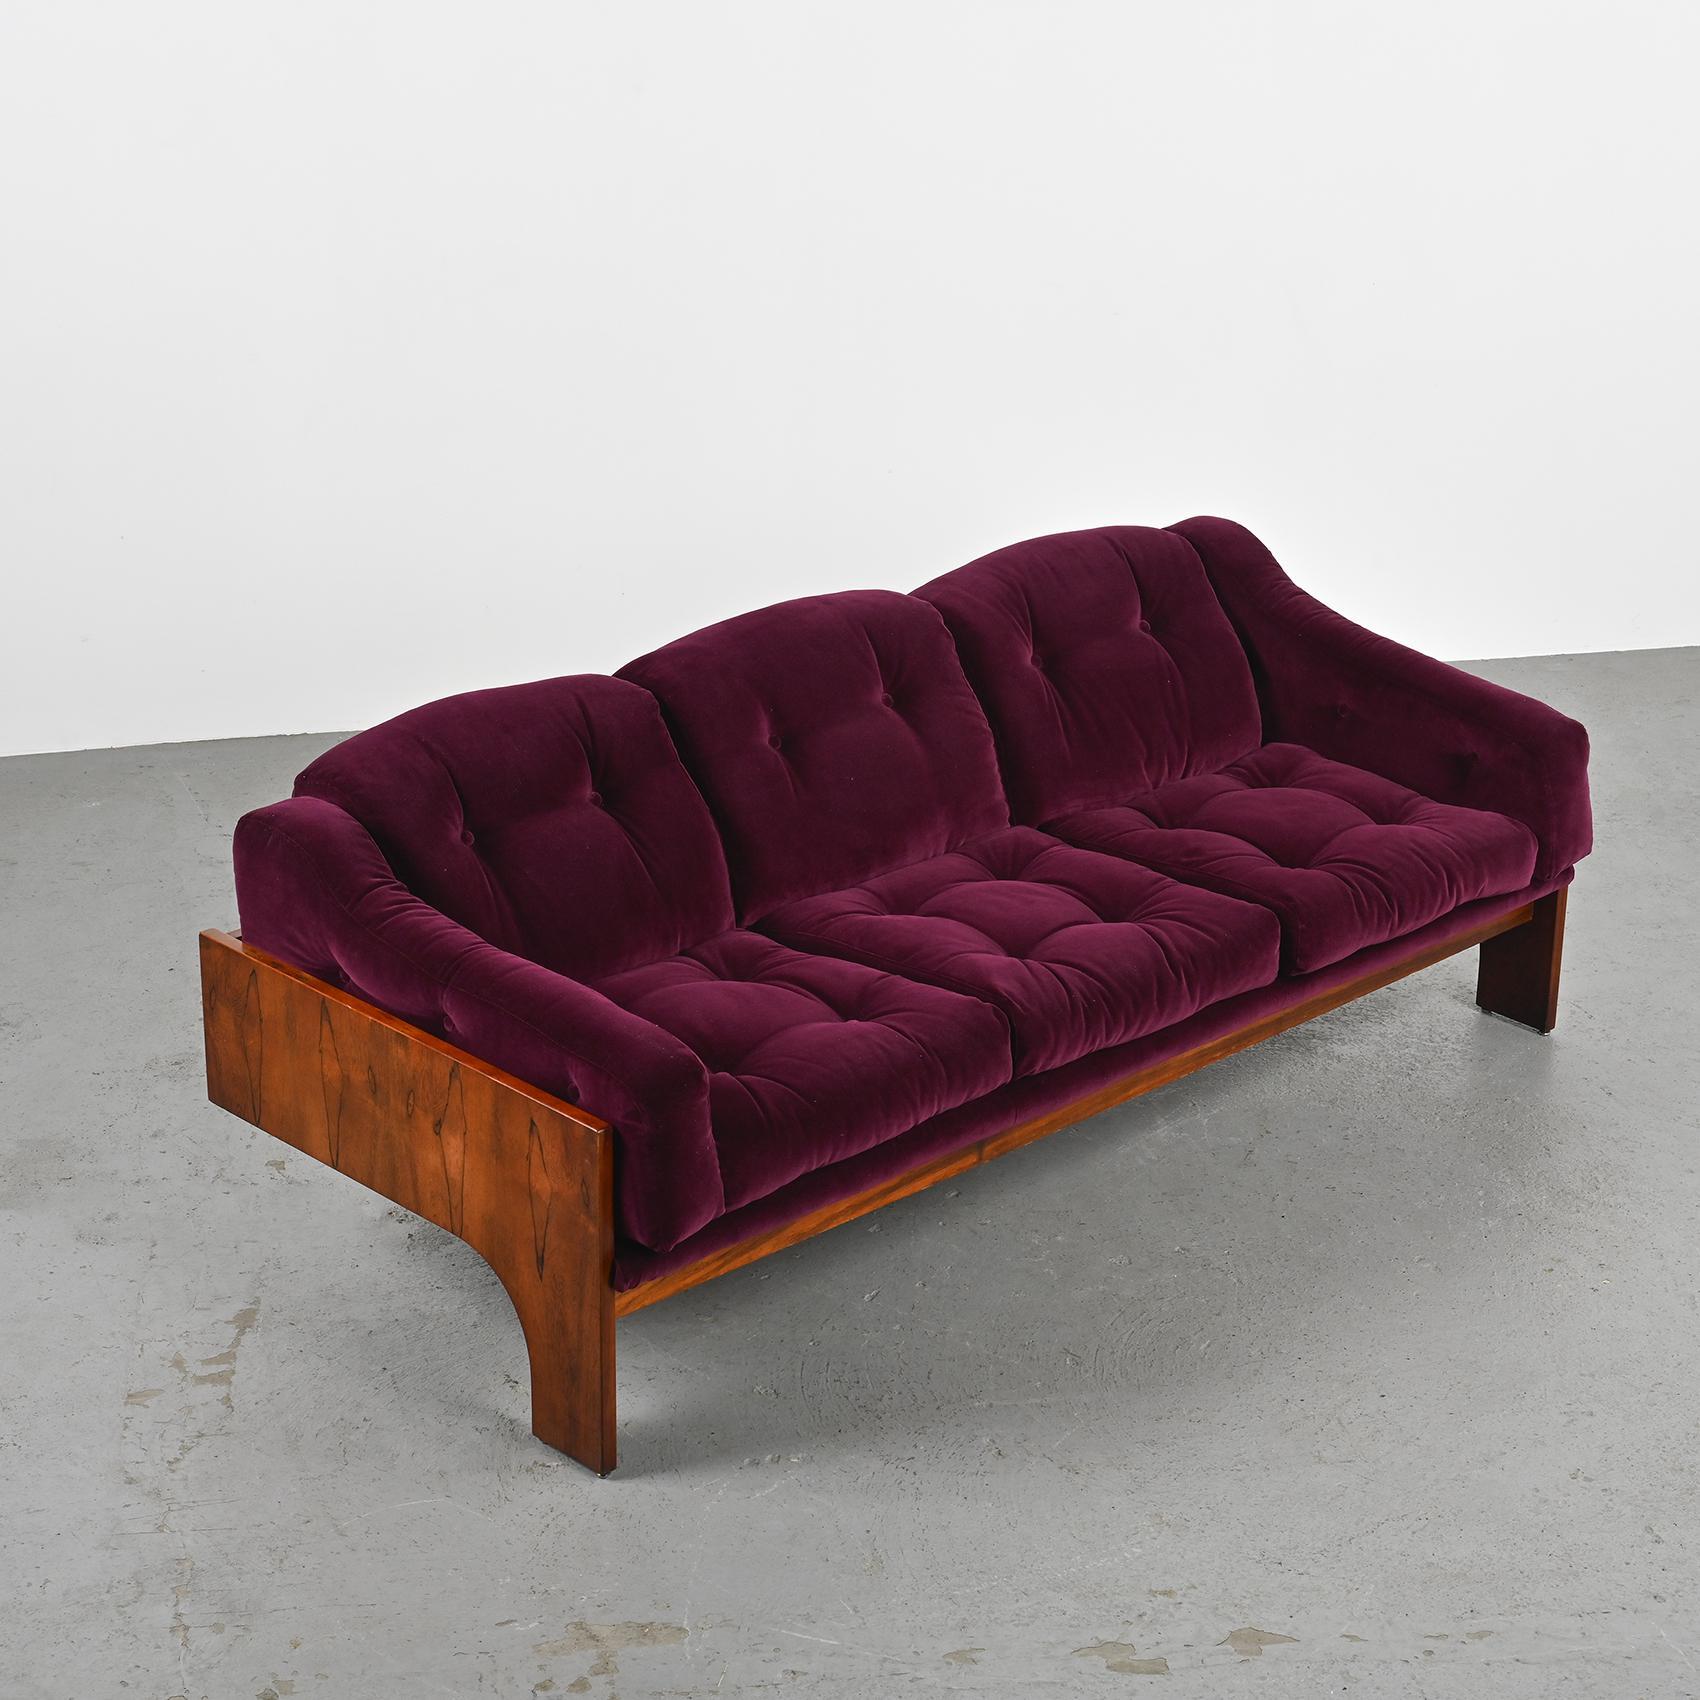 Faux Leather Oriolo sofa by Claudio Salocchi for Sormani, circa 1965